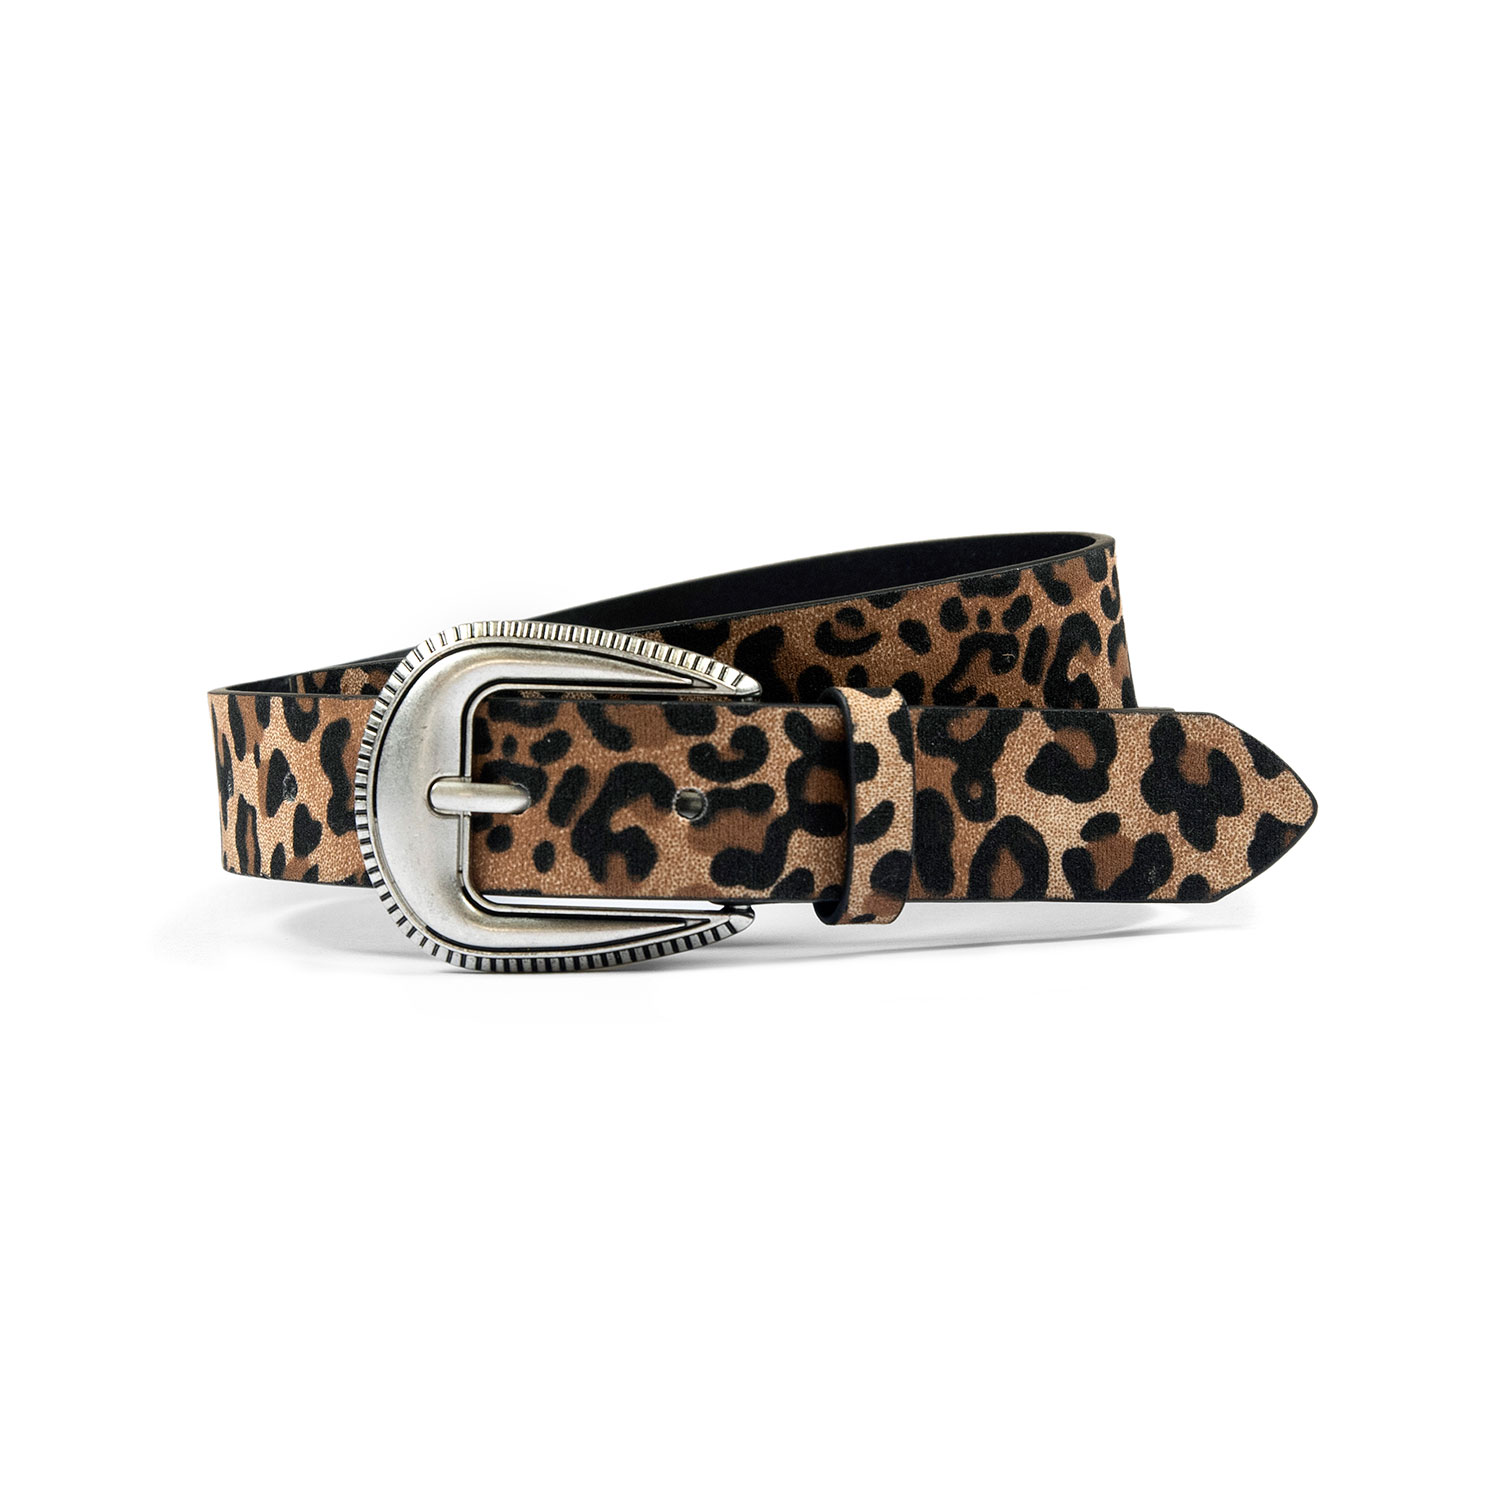 Vegan Wyatt - Leopard Print Faux Leather Belt (Size 28)